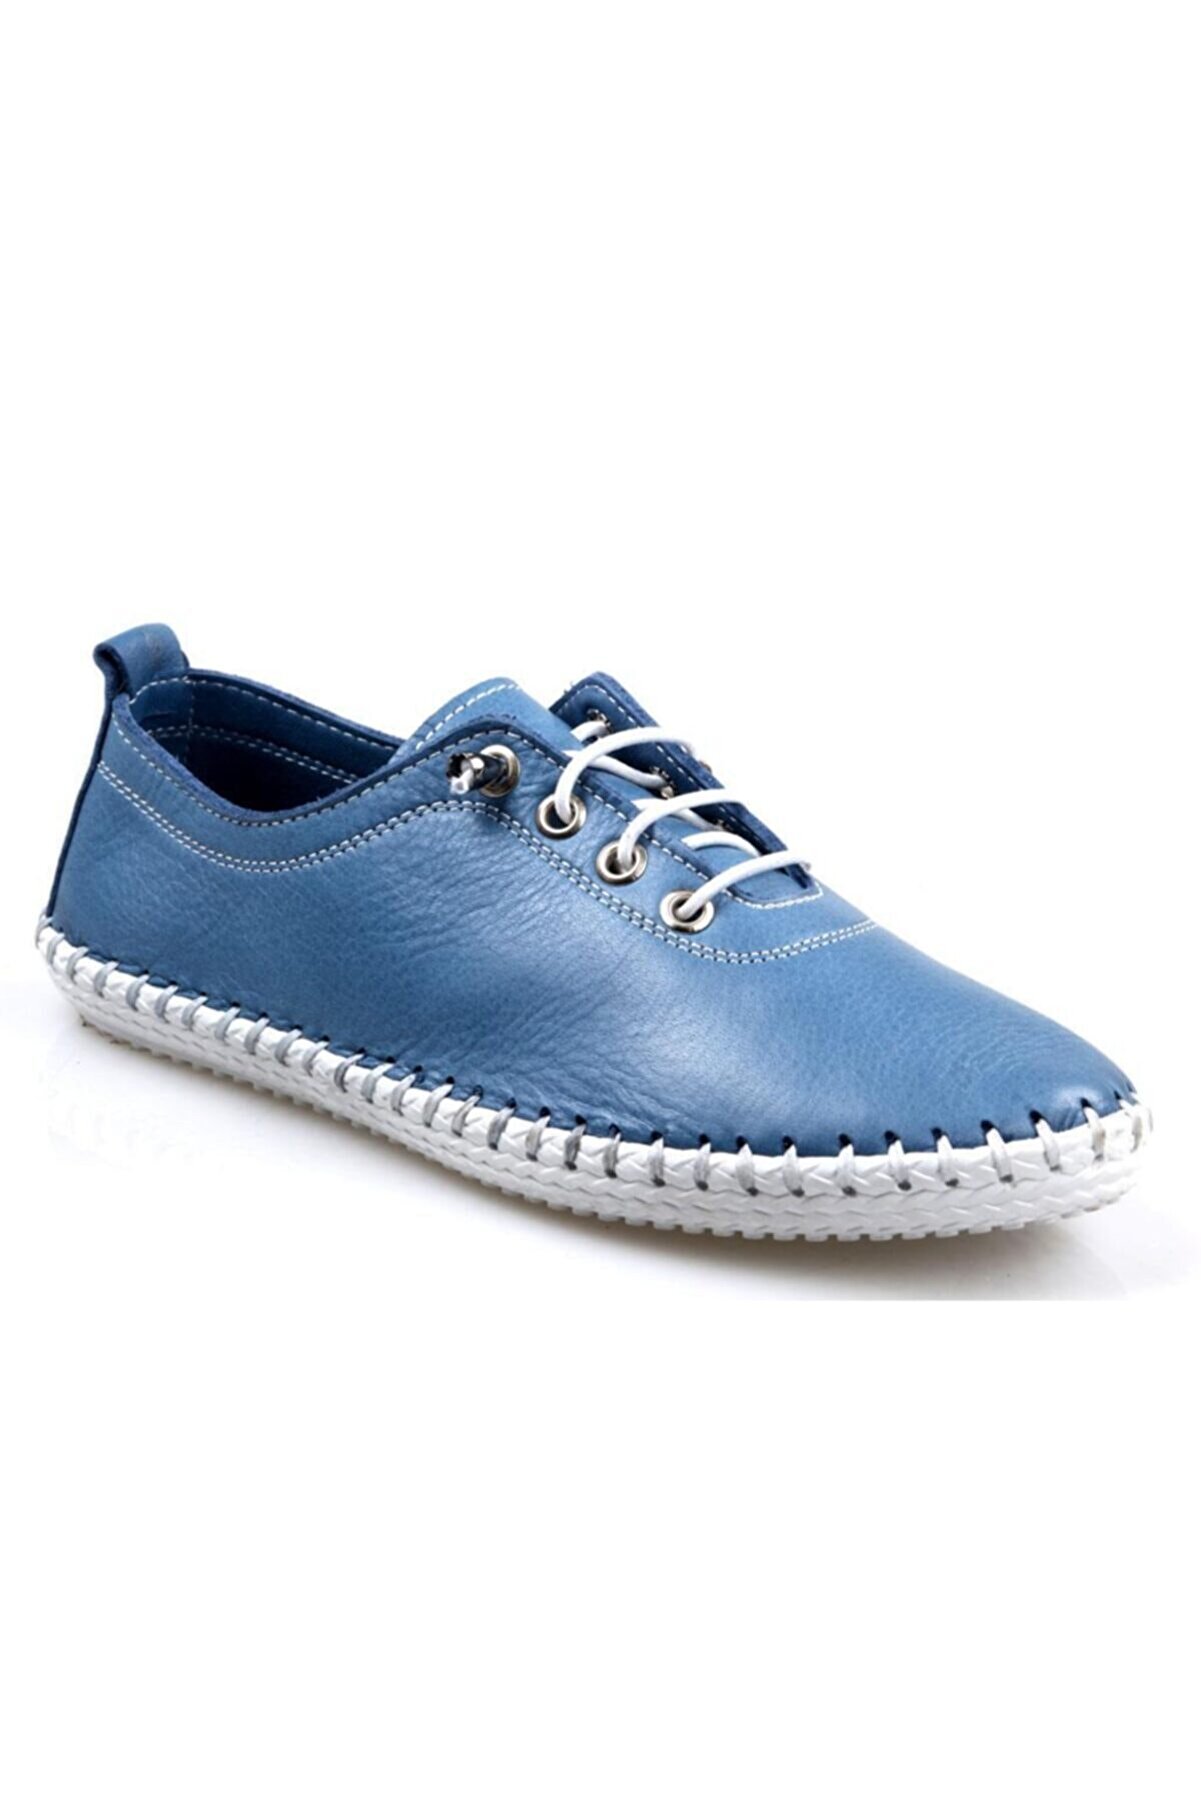 CATELLİ Bayan Ortapedik Mavi Deri Günlük Ayakkabı